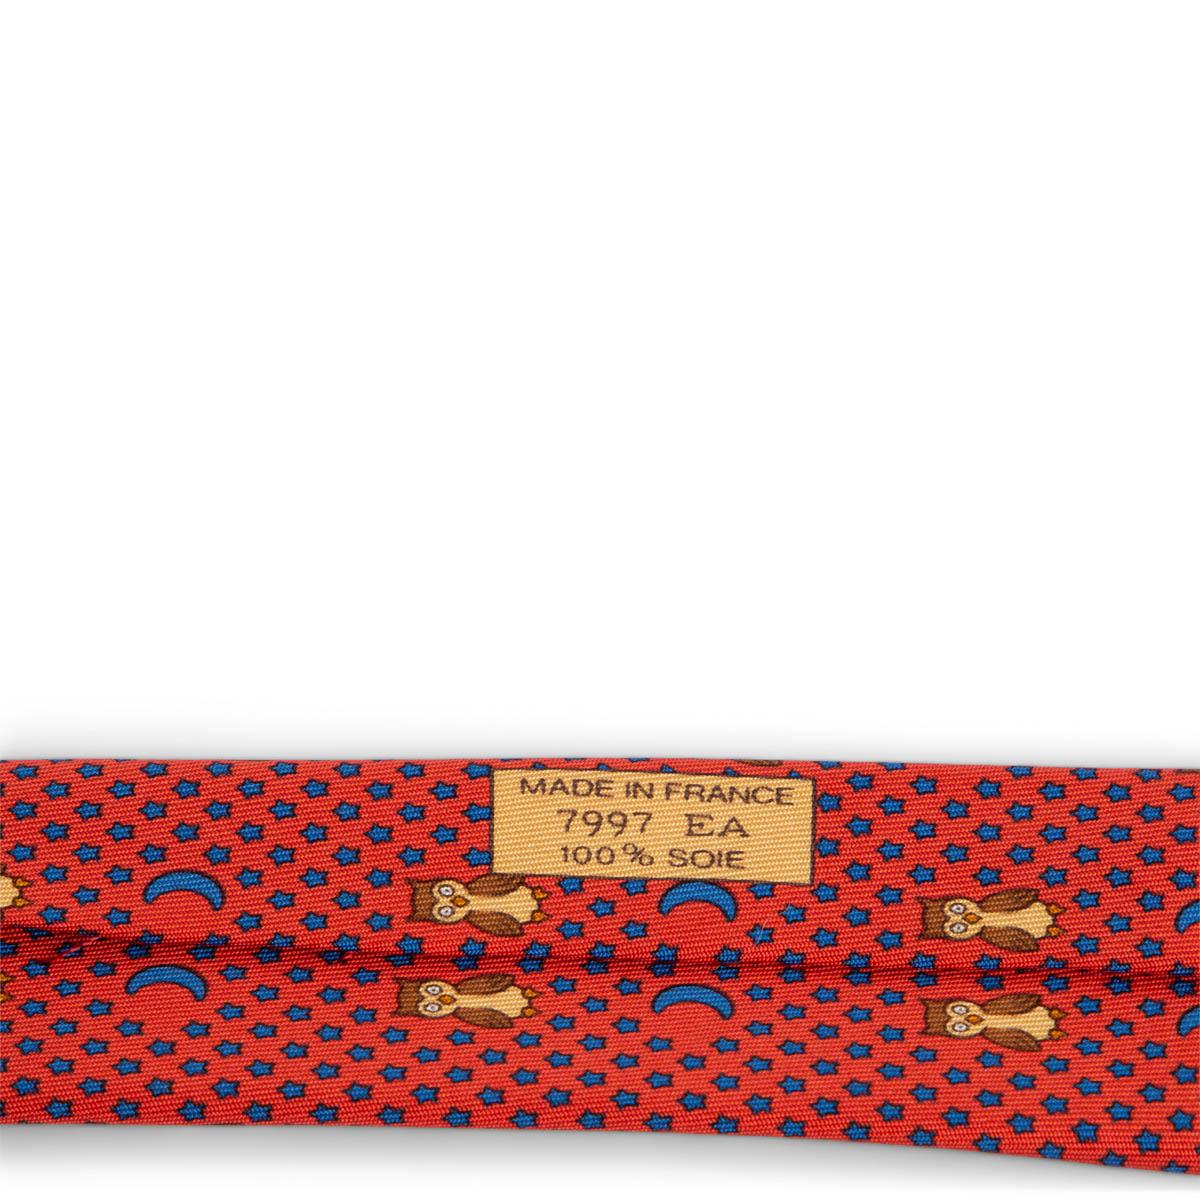 HERMÈS Cravate en sergé de soie orange 7997 NIGHT OWL Pour femmes en vente